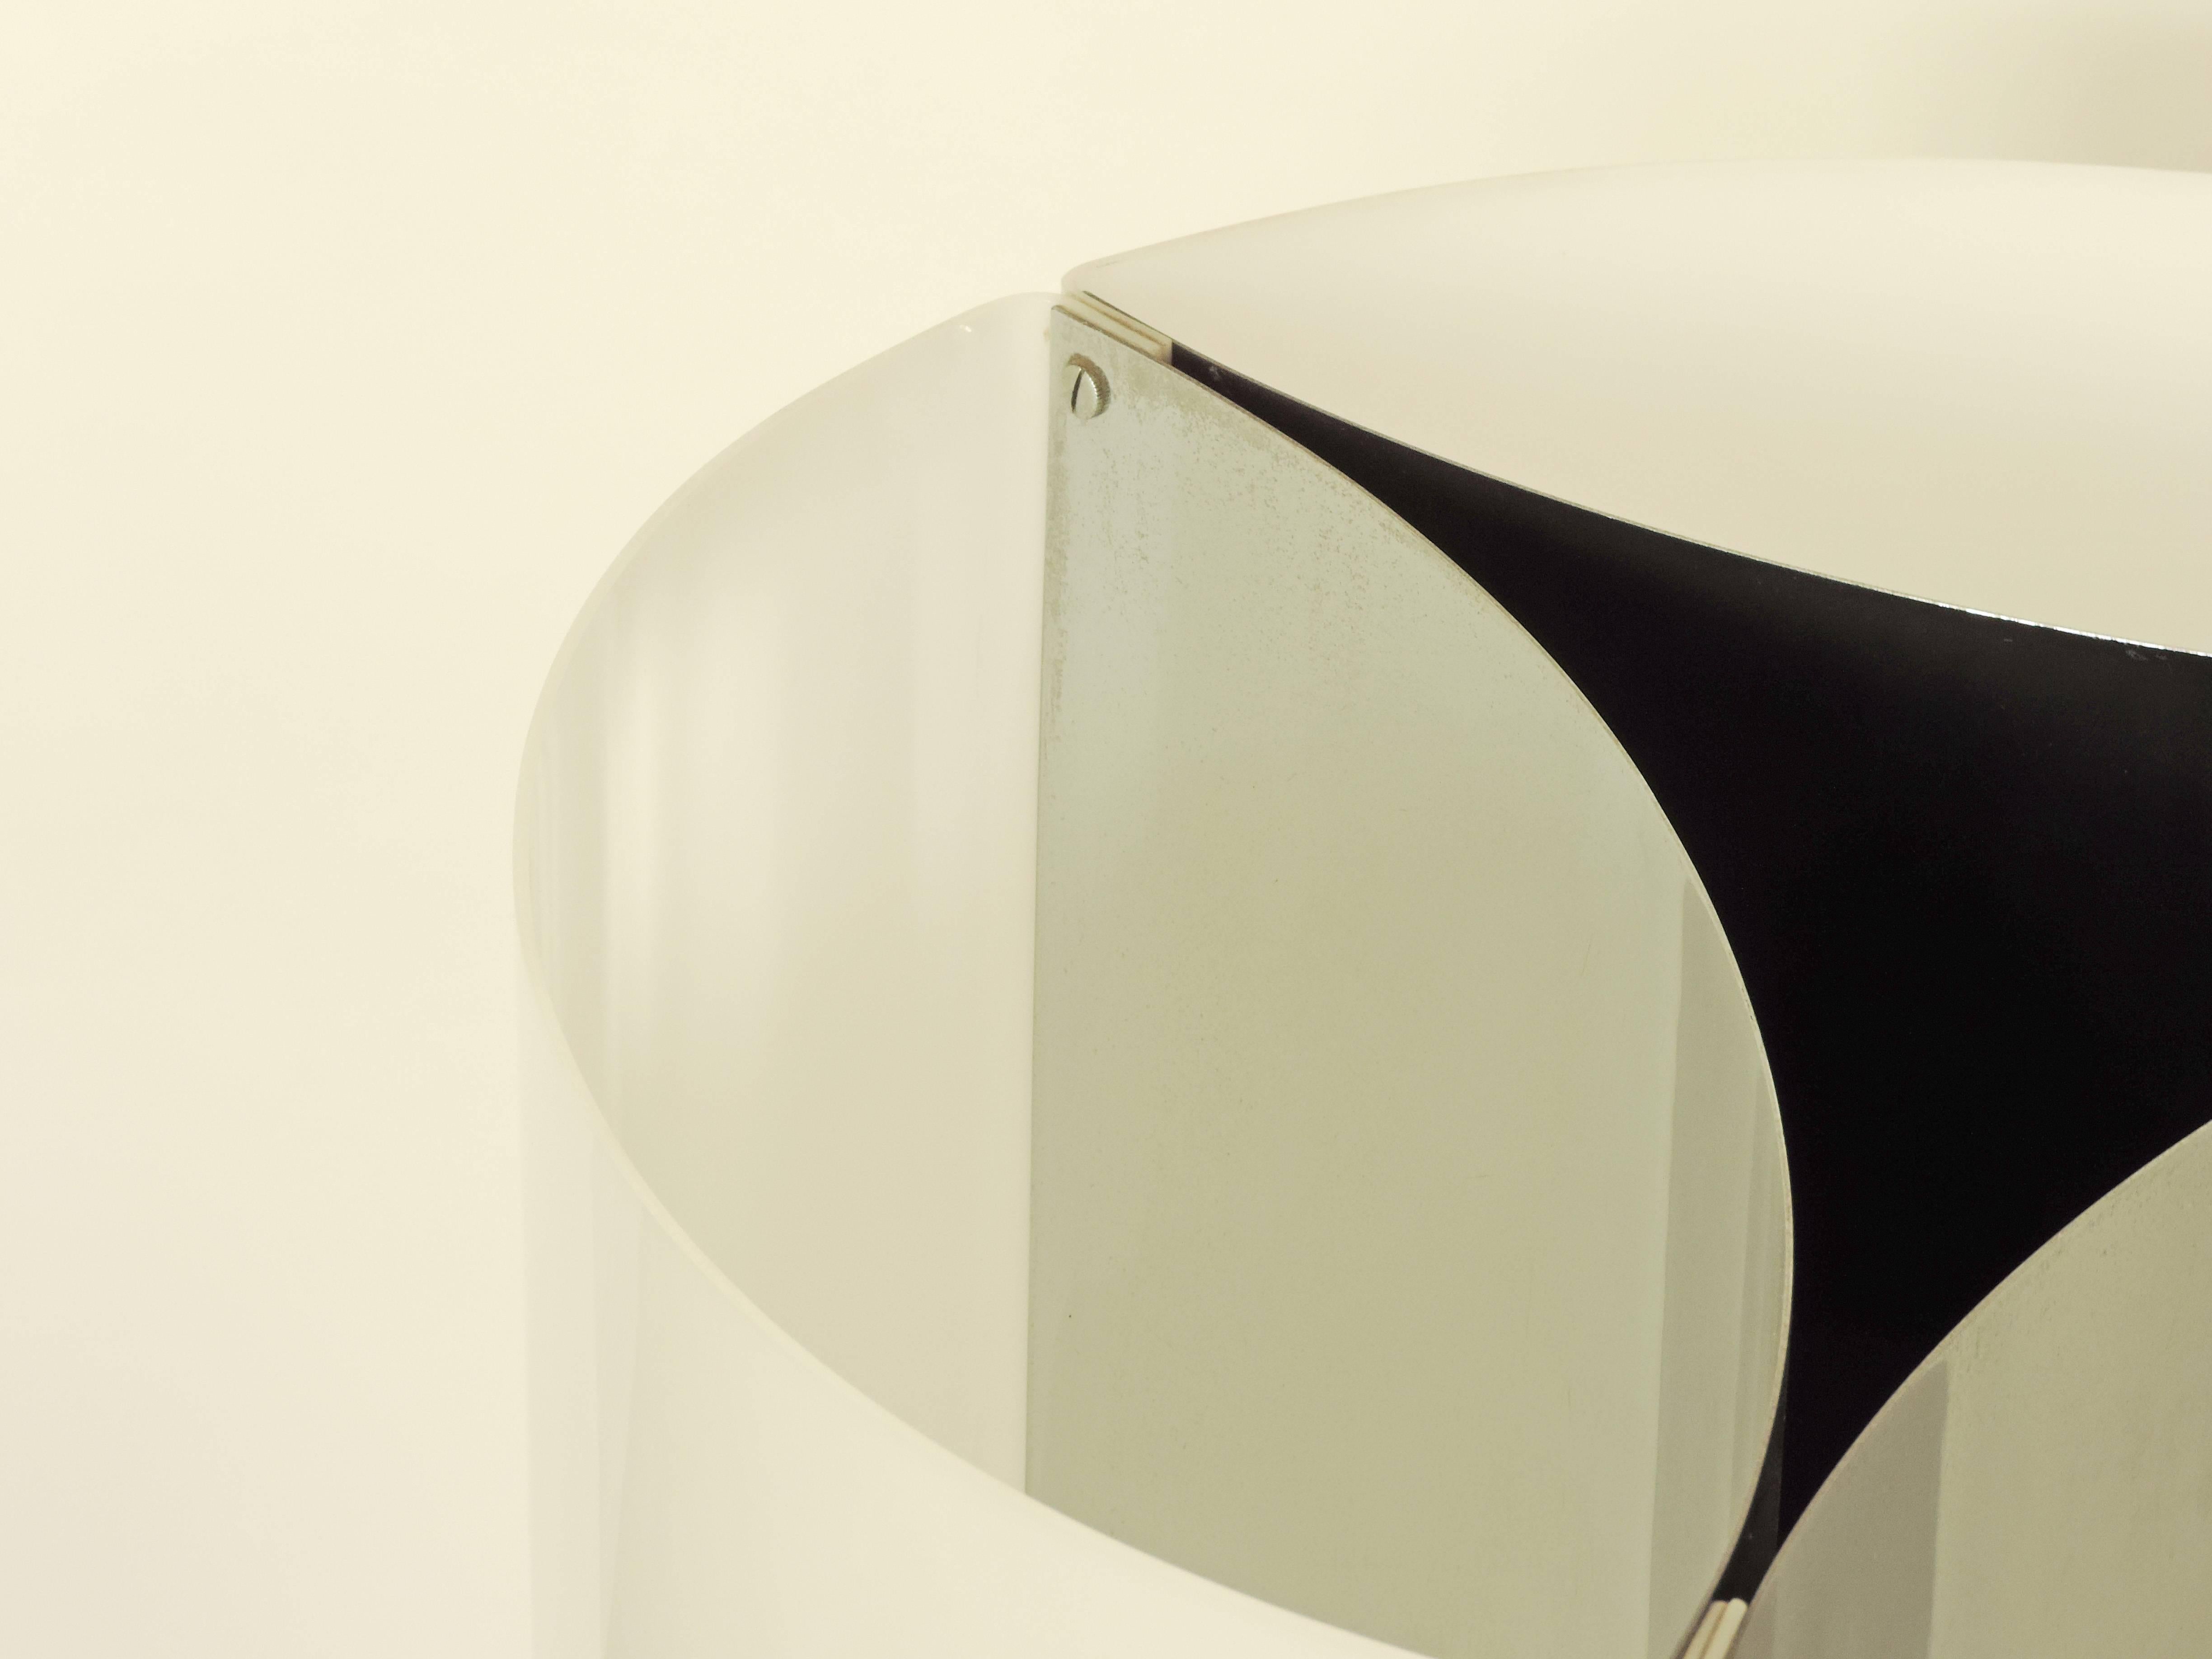 Massimo Vignelli model 526g table lamp for Arteluce.